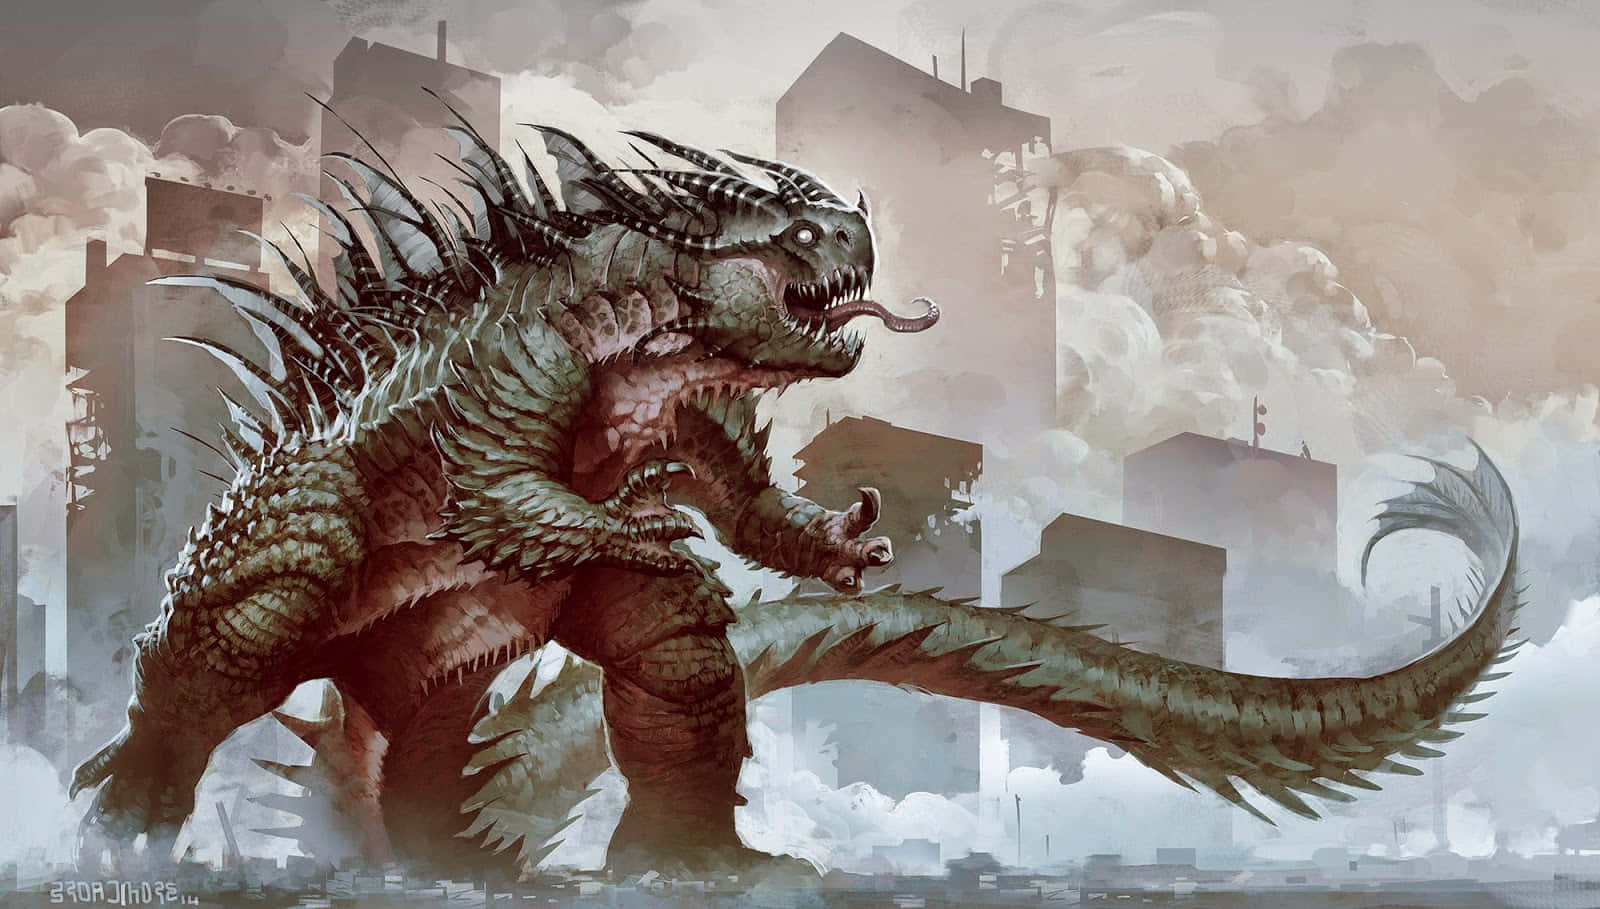 The fierce Kaiju - Godzilla rises from the stormy sea Wallpaper